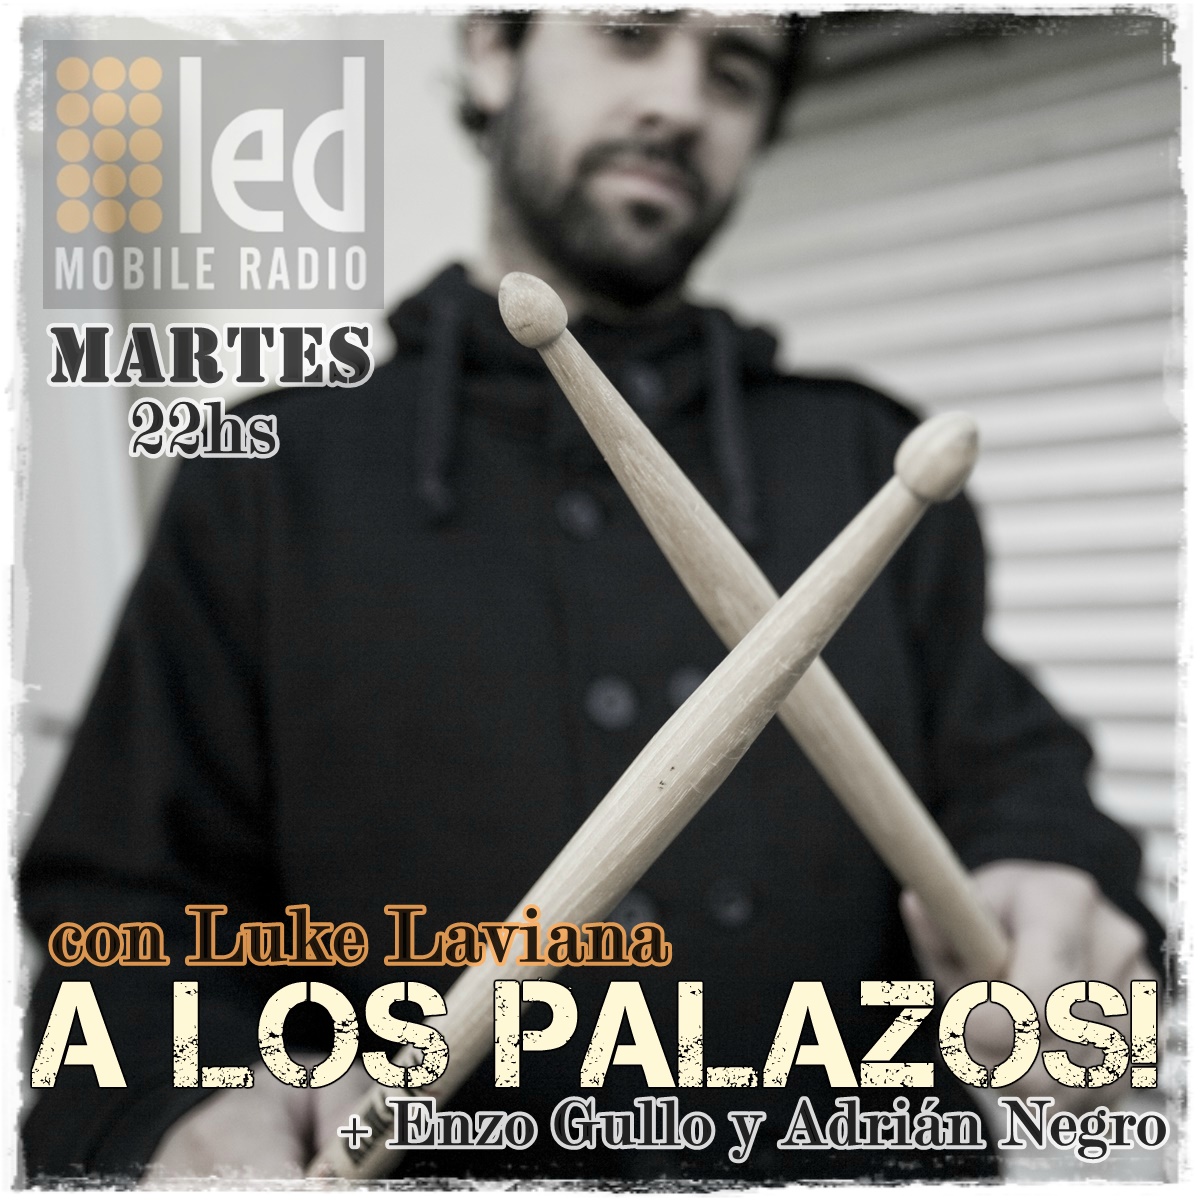 #Podcast A los Palazos! 26.06: ¡Noche metalera! Mariano E. Martín @horcasoficial y M. Benito #Thorax